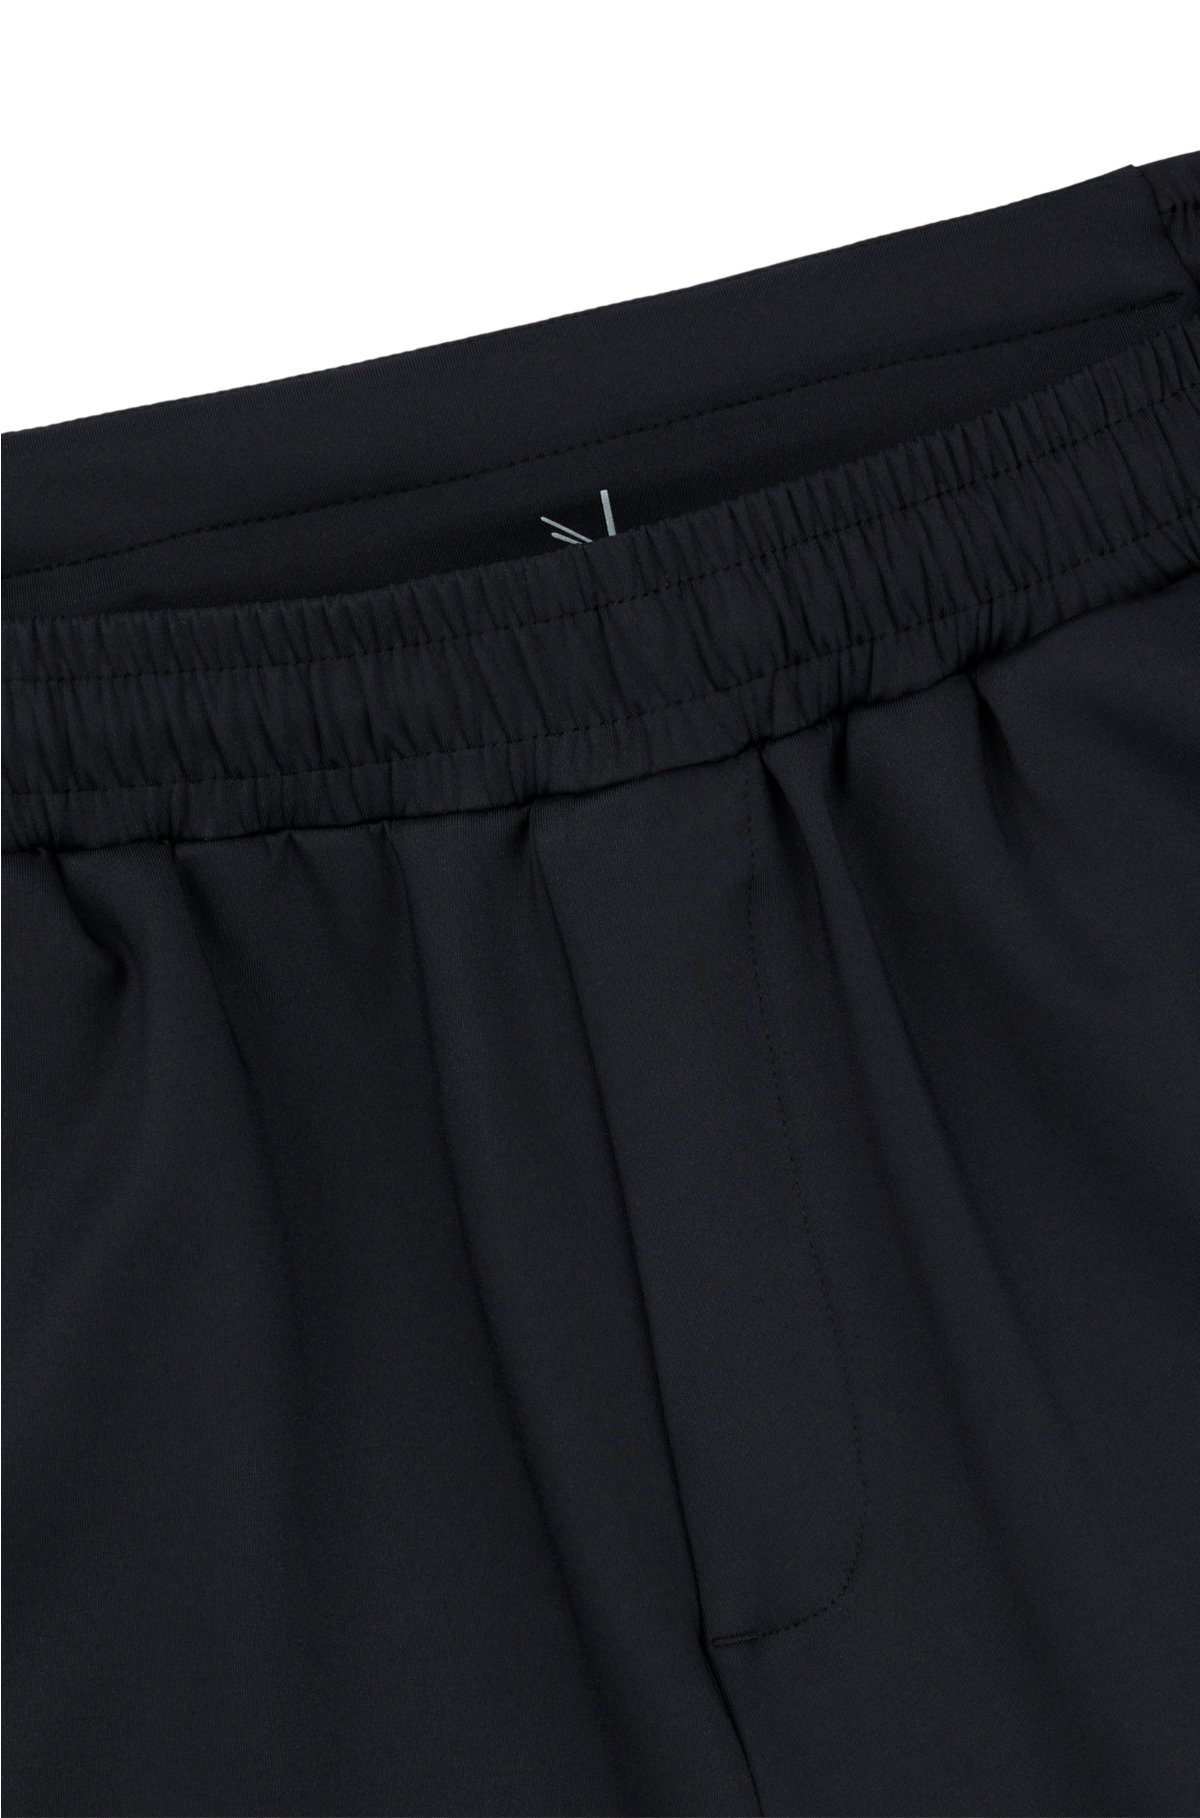 BOSS - Regular-fit shorts with rear zip pocket